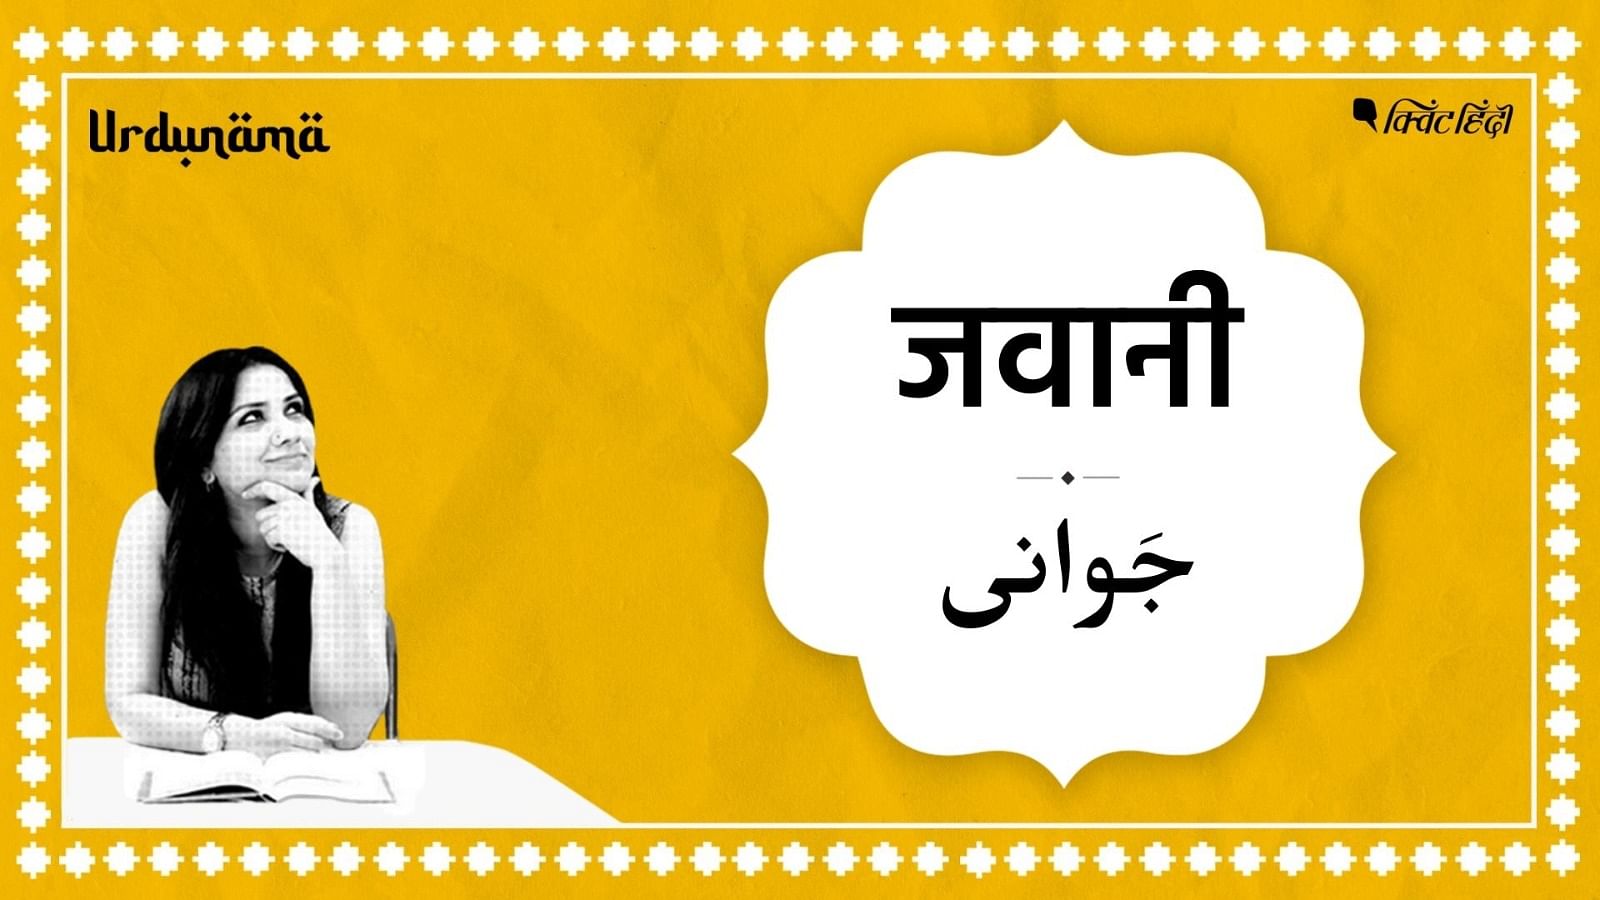 <div class="paragraphs"><p>Urdunama: उर्दू शायरी में छिपे हैं 'जवानी' को समझने के राज?</p></div>